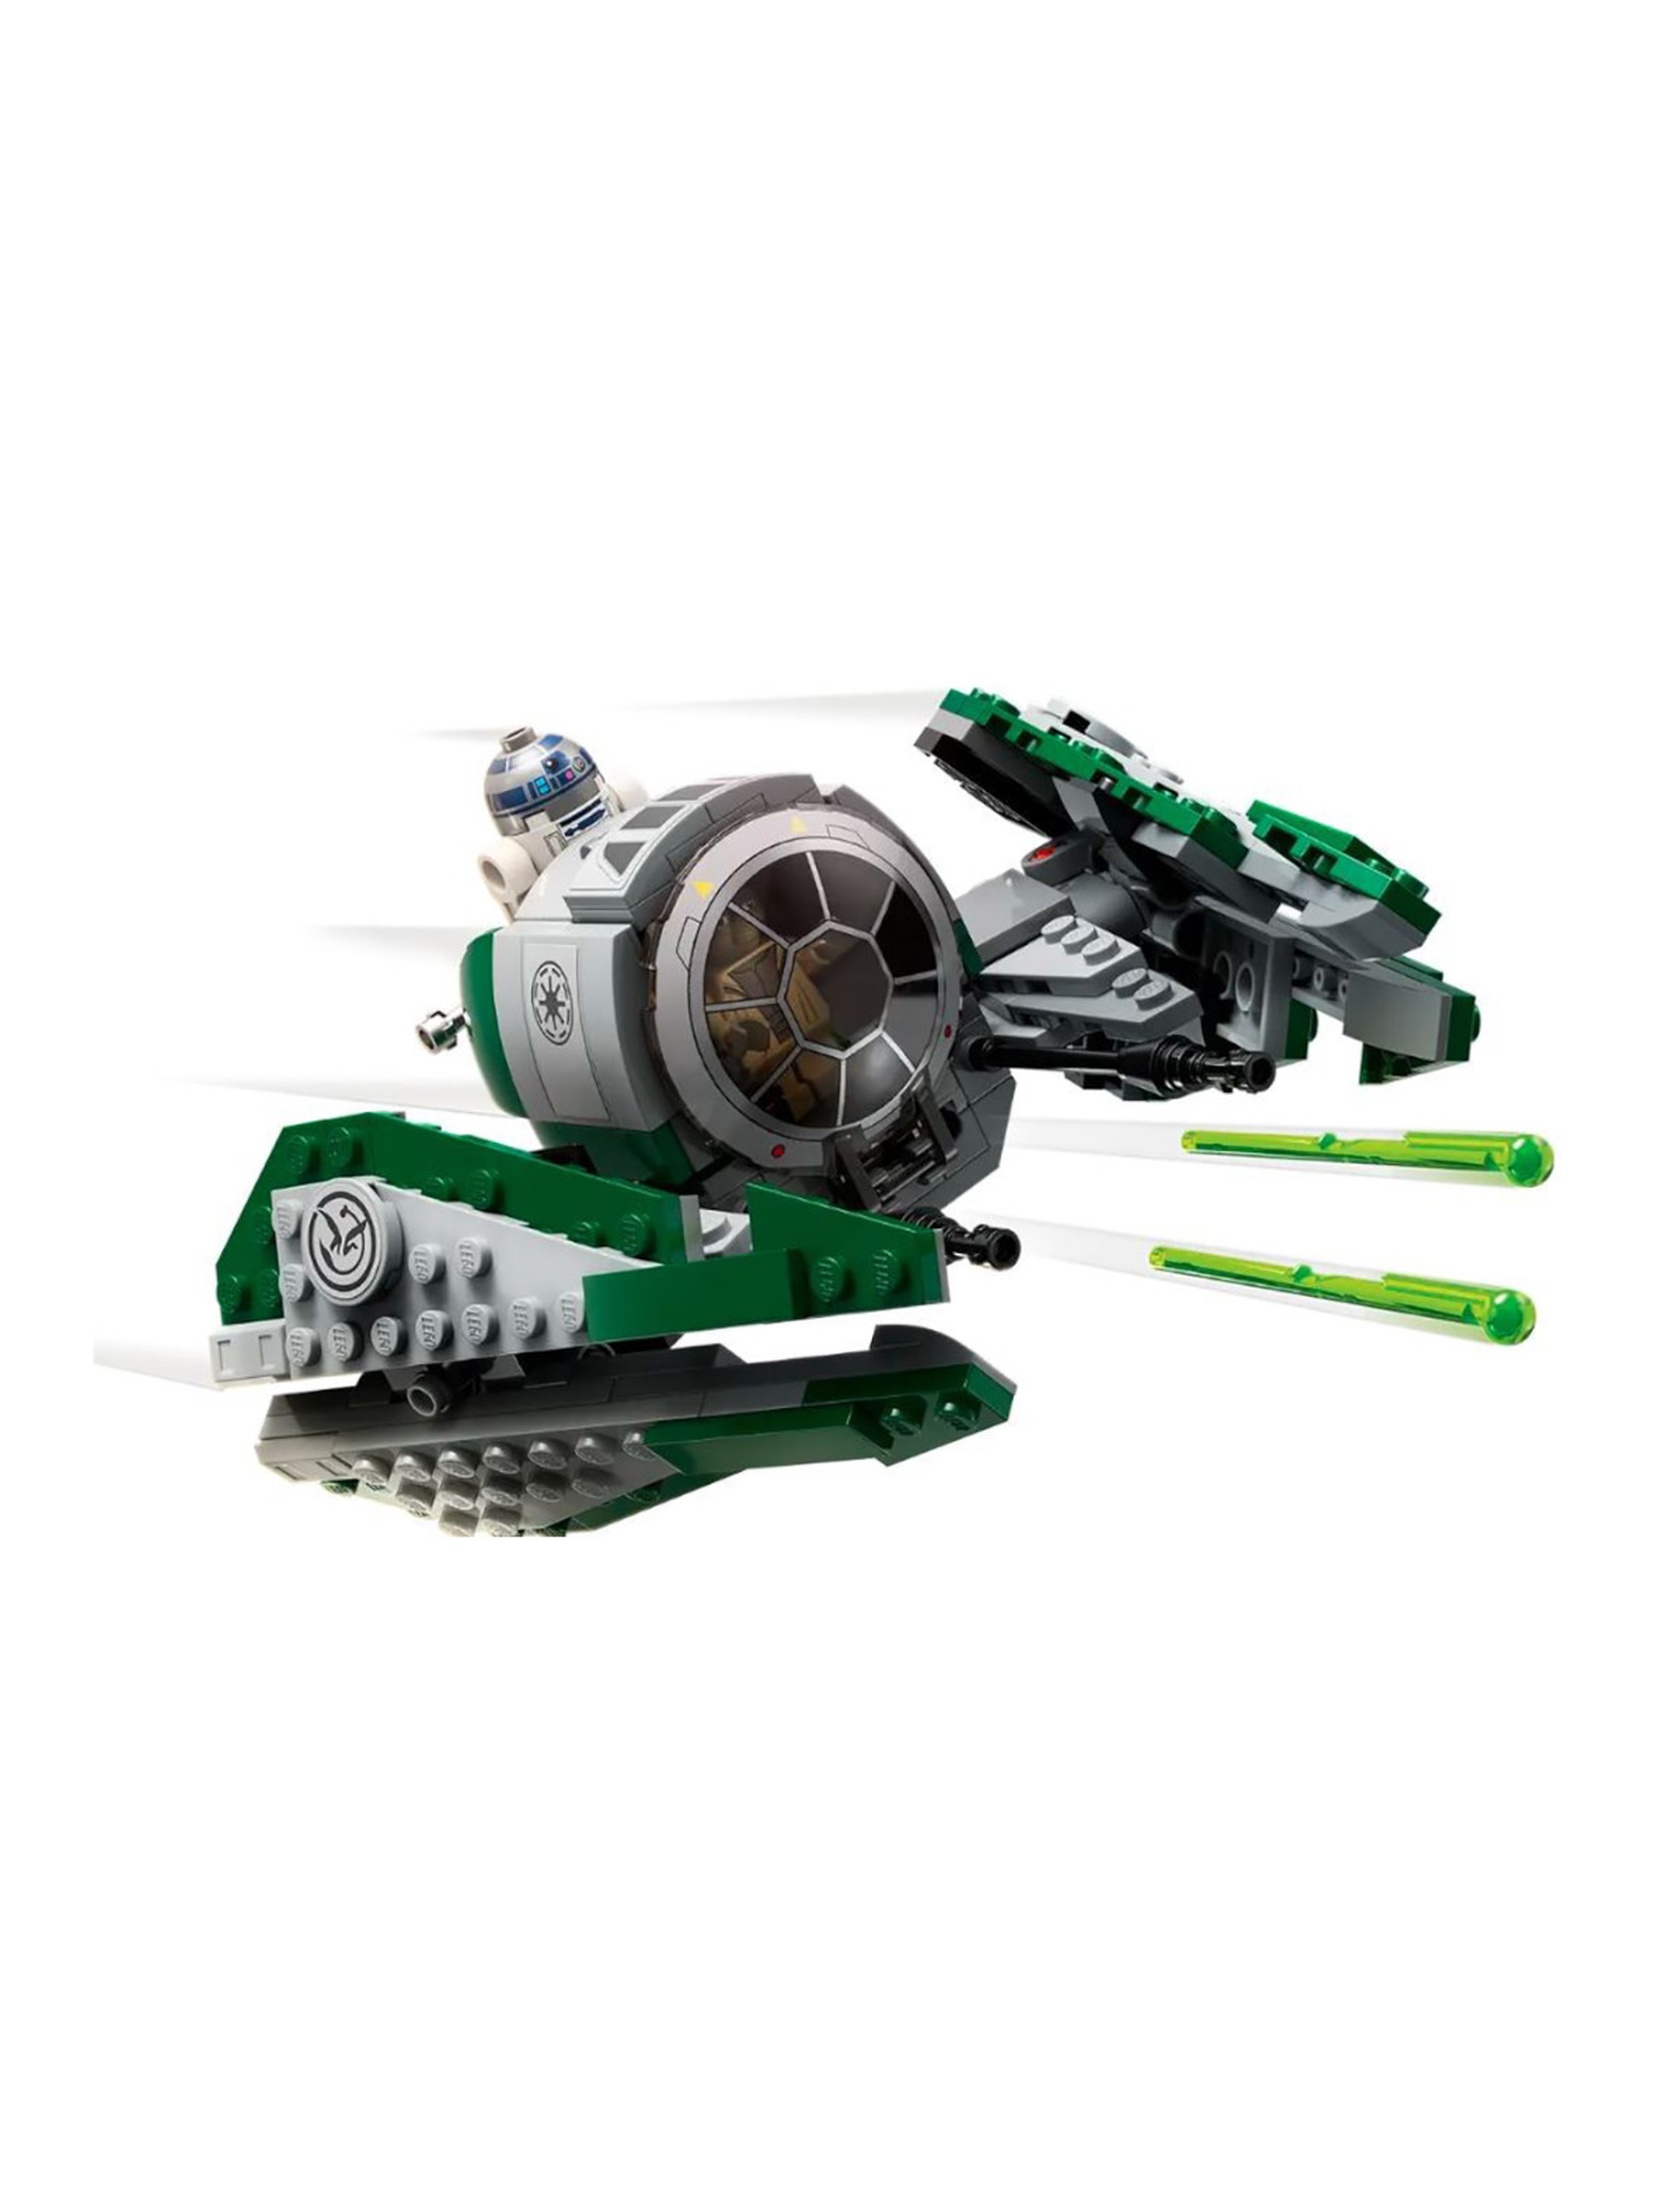 Klocki LEGO Star Wars 75360 Jedi Starfighter Yody - 253 elementy, wiek 8 +